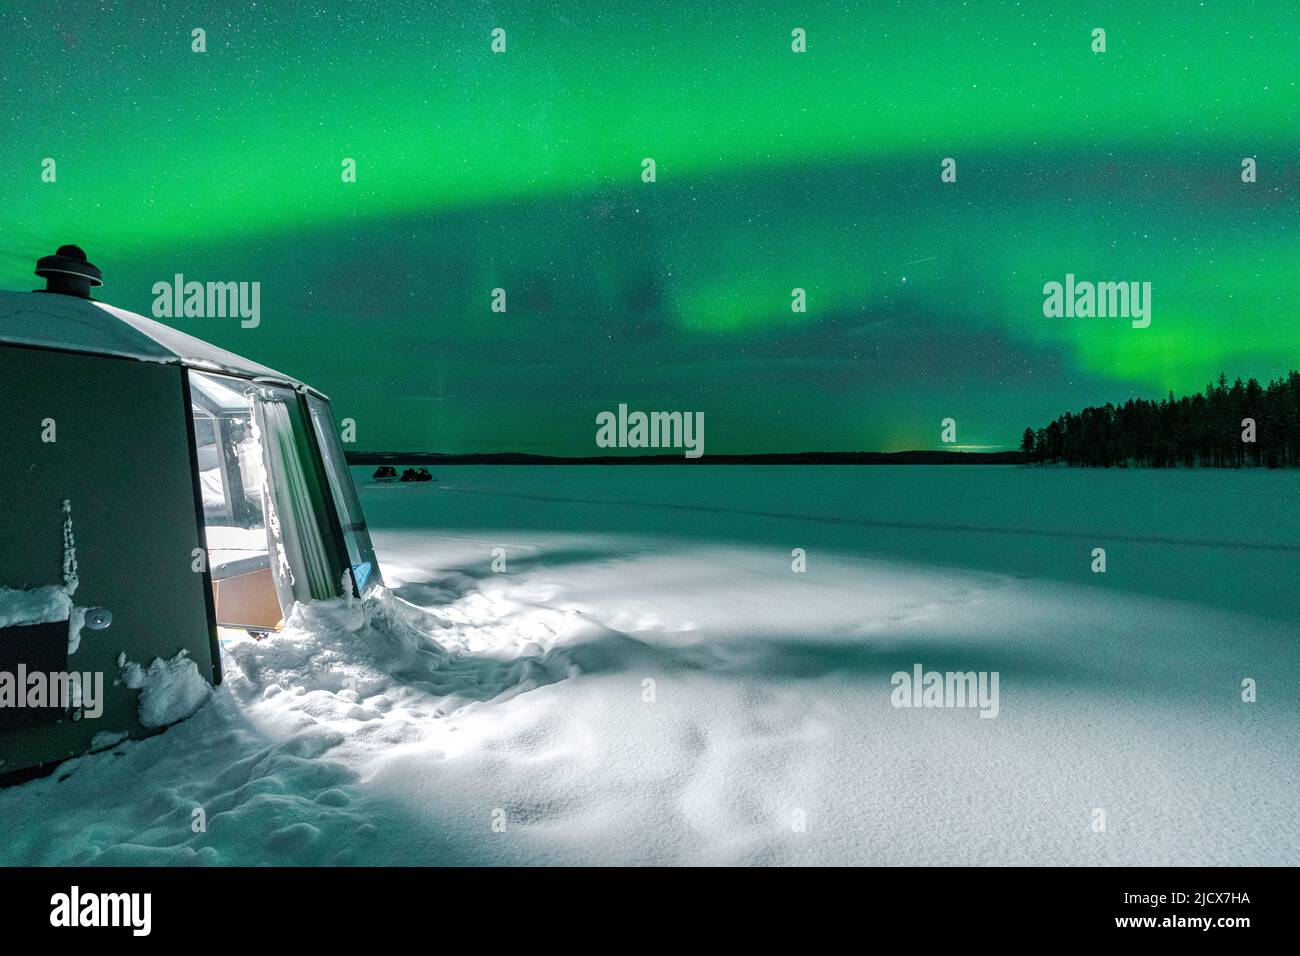 Igloo lumineux vide dans le paysage gelé sous Aurora Borealis (aurores boréales), Jokkmokk, Laponie, Suède, Scandinavie, Europe Banque D'Images